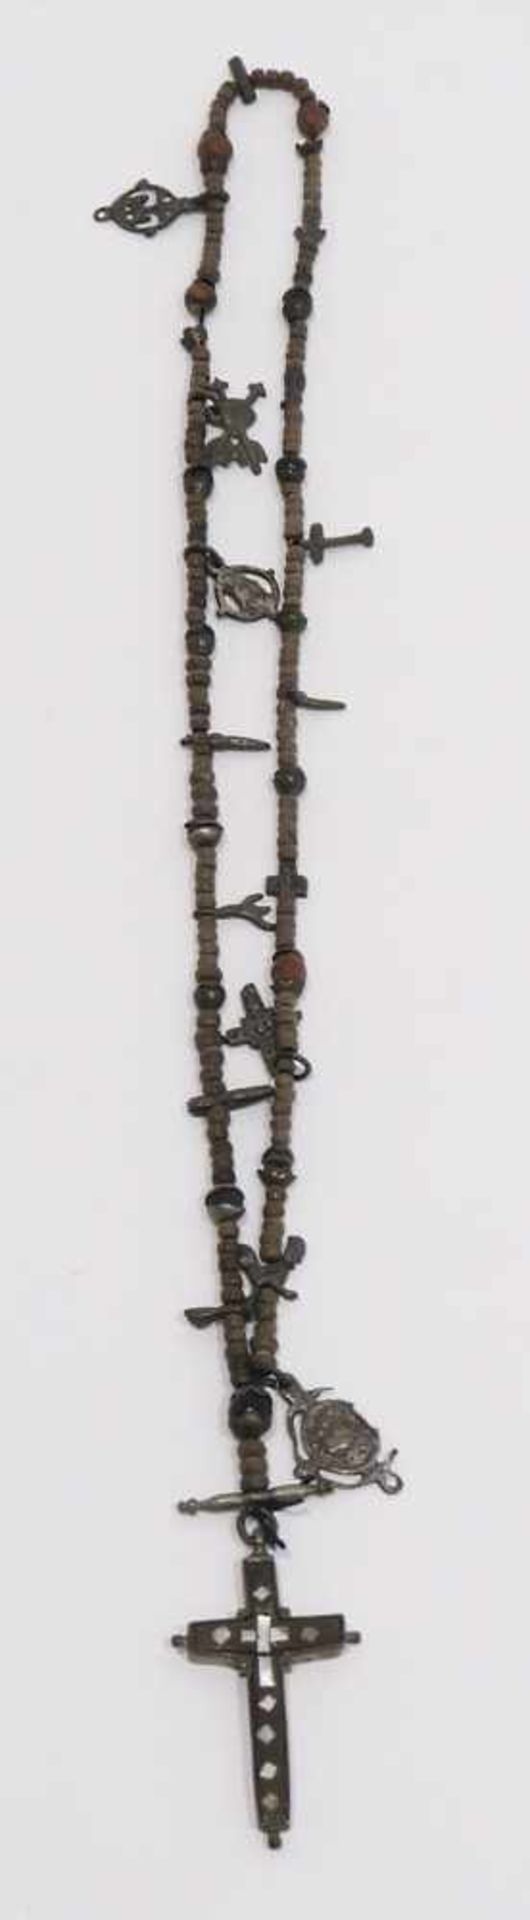 RosenkranzHolzperlen, eingehängte Symbole (Leidenswerkzeuge Christi u.a.) aus Metall, Abschlusskreuz